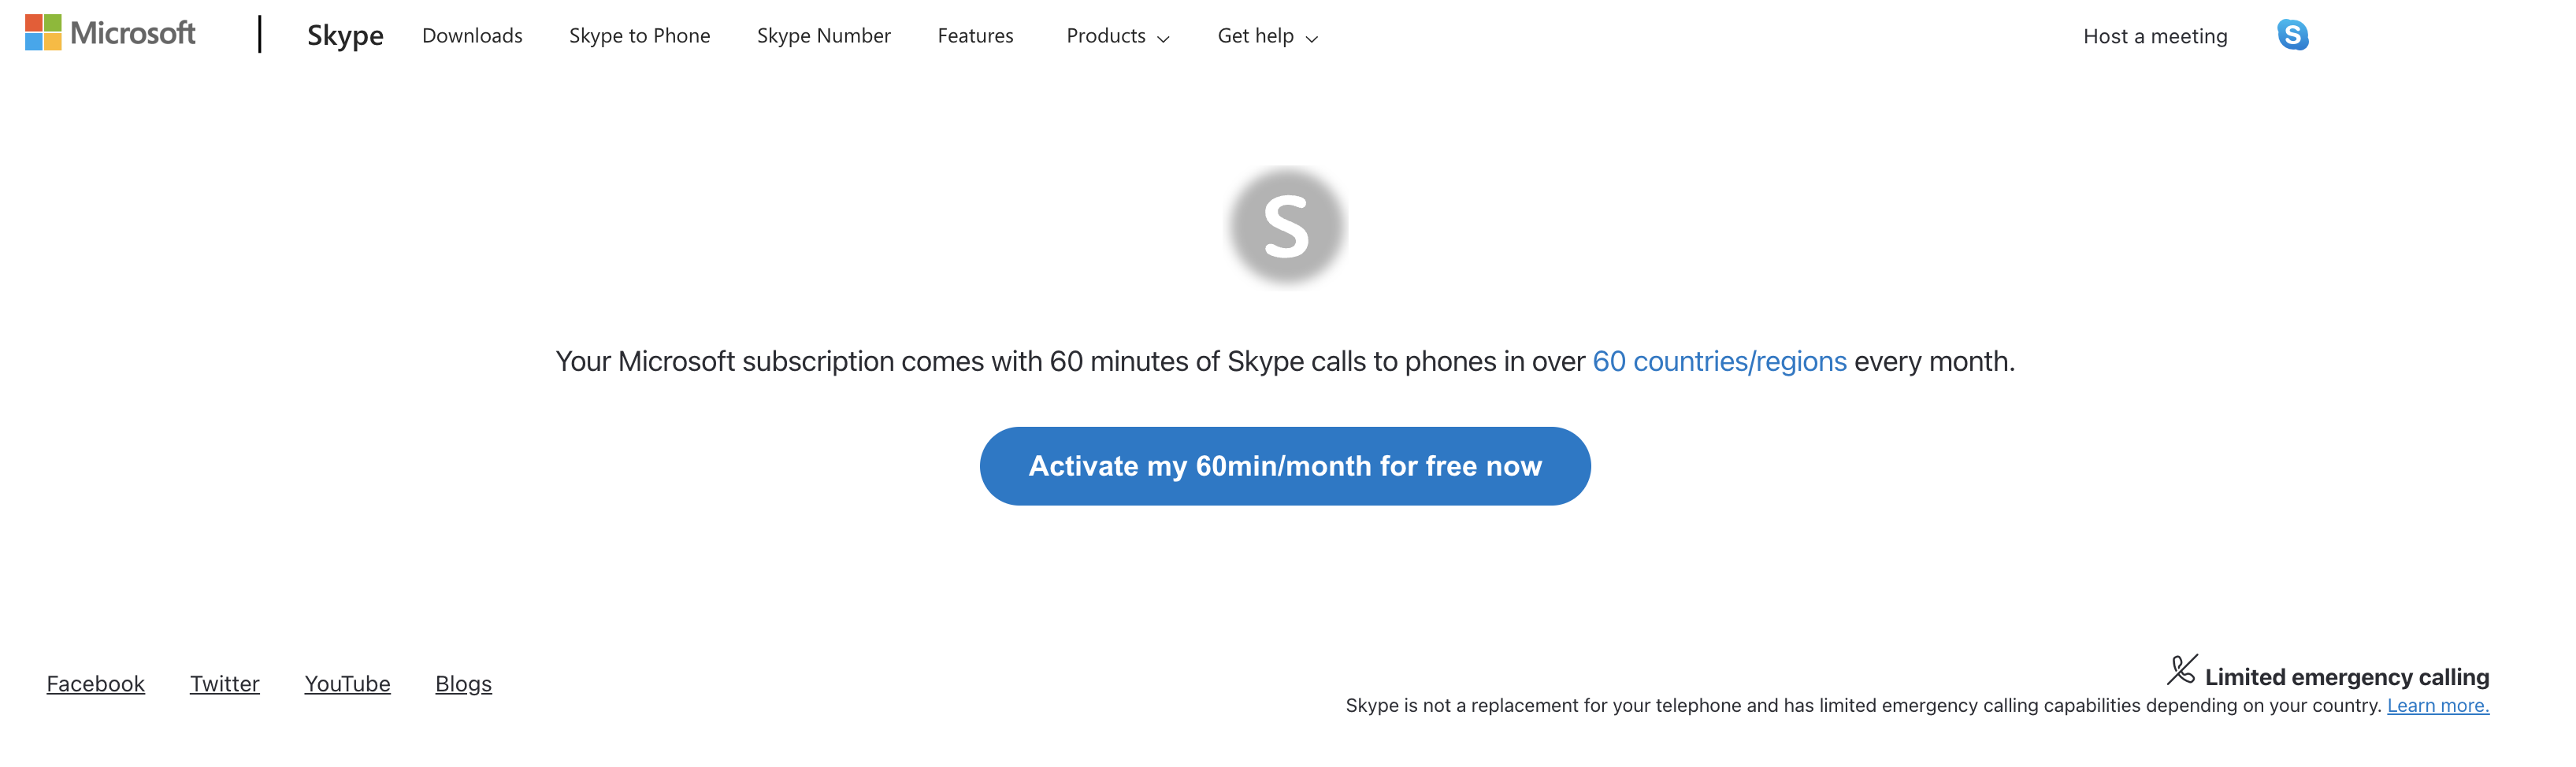 Skype で 60 分間無料でライセンス認証を行う Web ページ